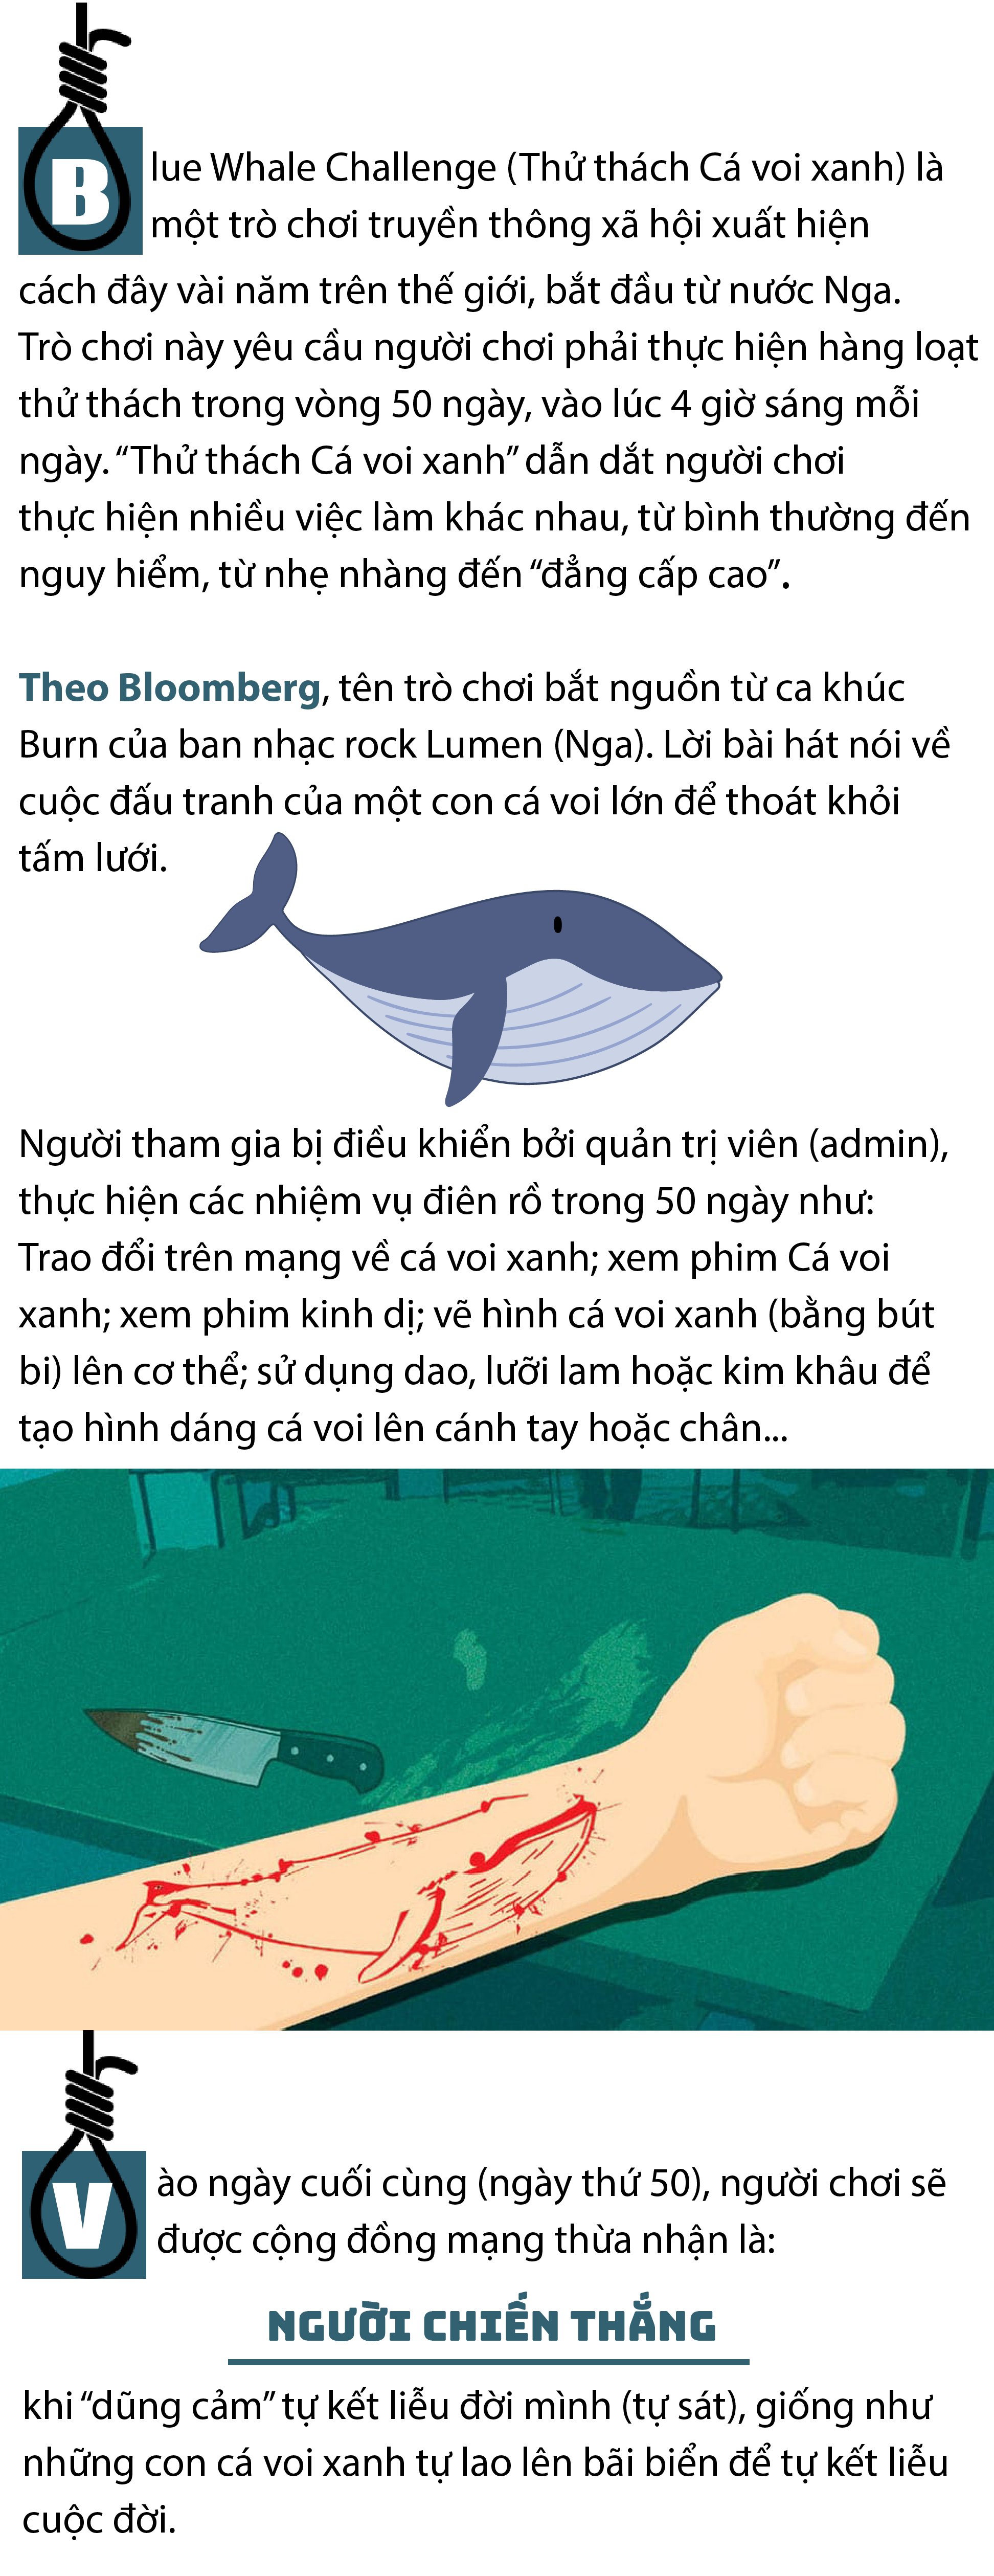 Bạn đã từng thách thức chính mình với cá voi xanh chưa? Nhấp chuột để xem cuộc đối đầu kịch tính giữa con người và loài vật khổng lồ trên đại dương mênh mông.